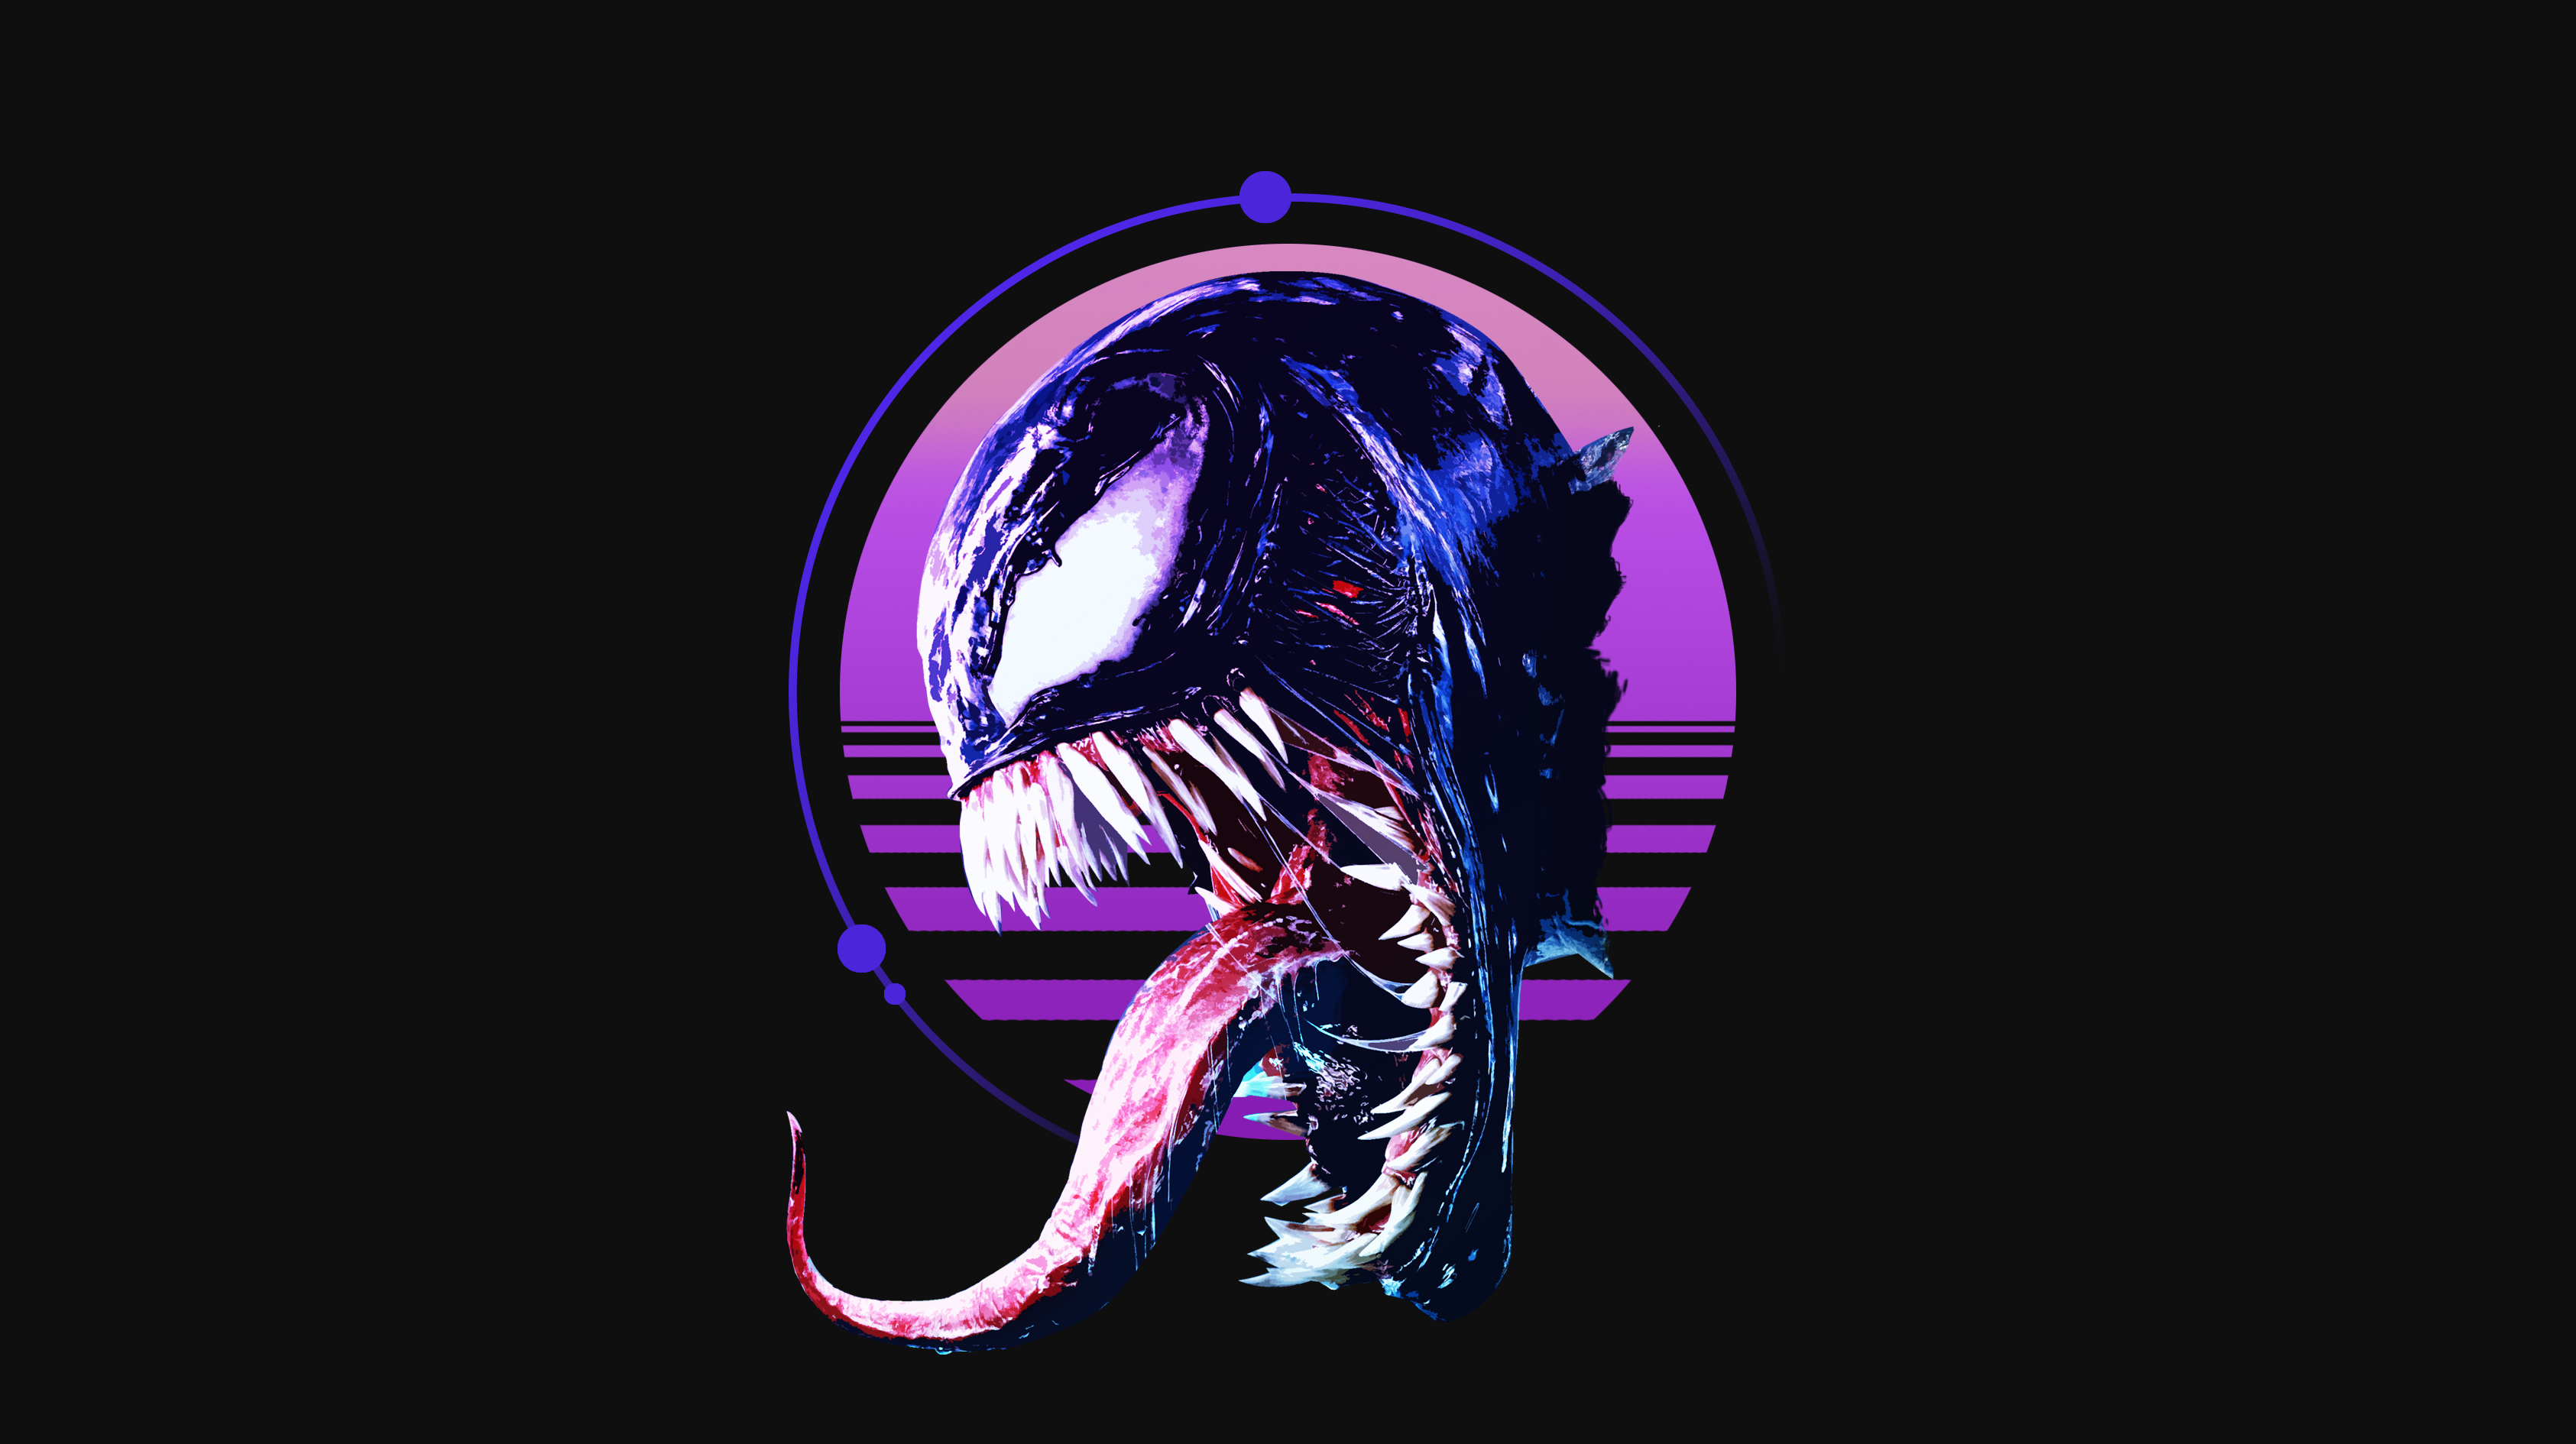 Venom Movie Hd Wallpaper For Mobile